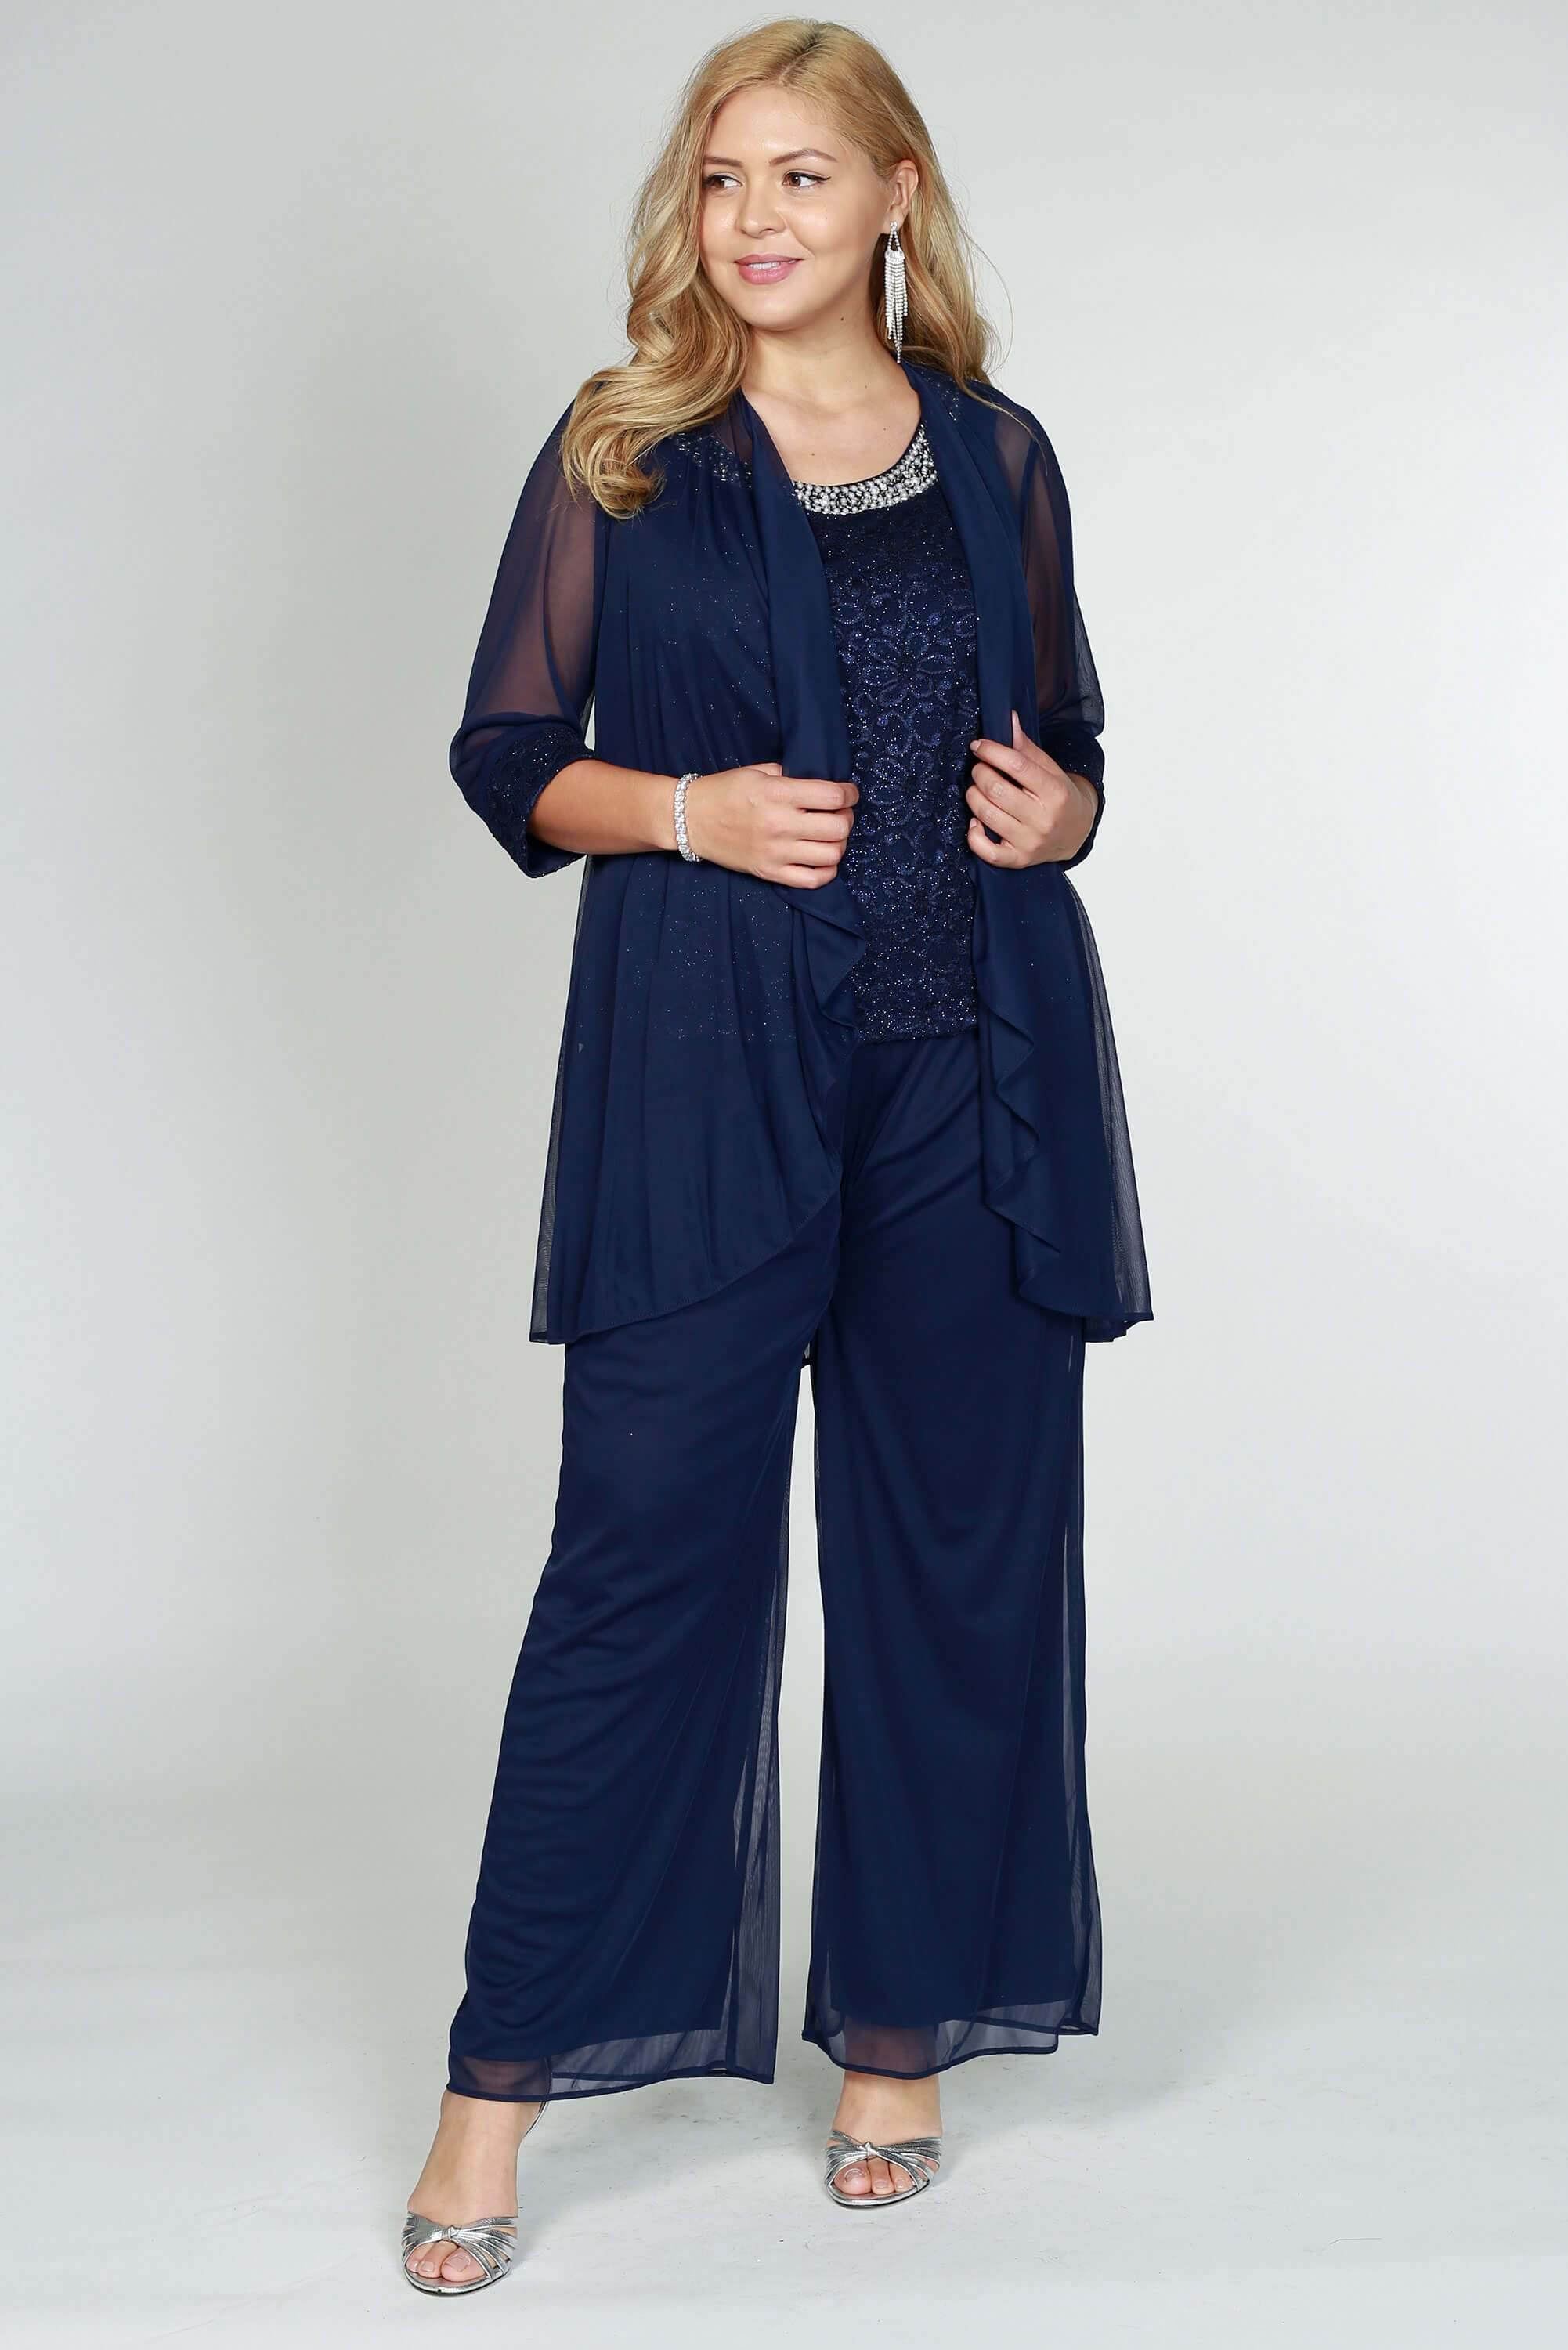 R&M Richards 5008P Petite Lace Pant Suit | The Dress Outlet